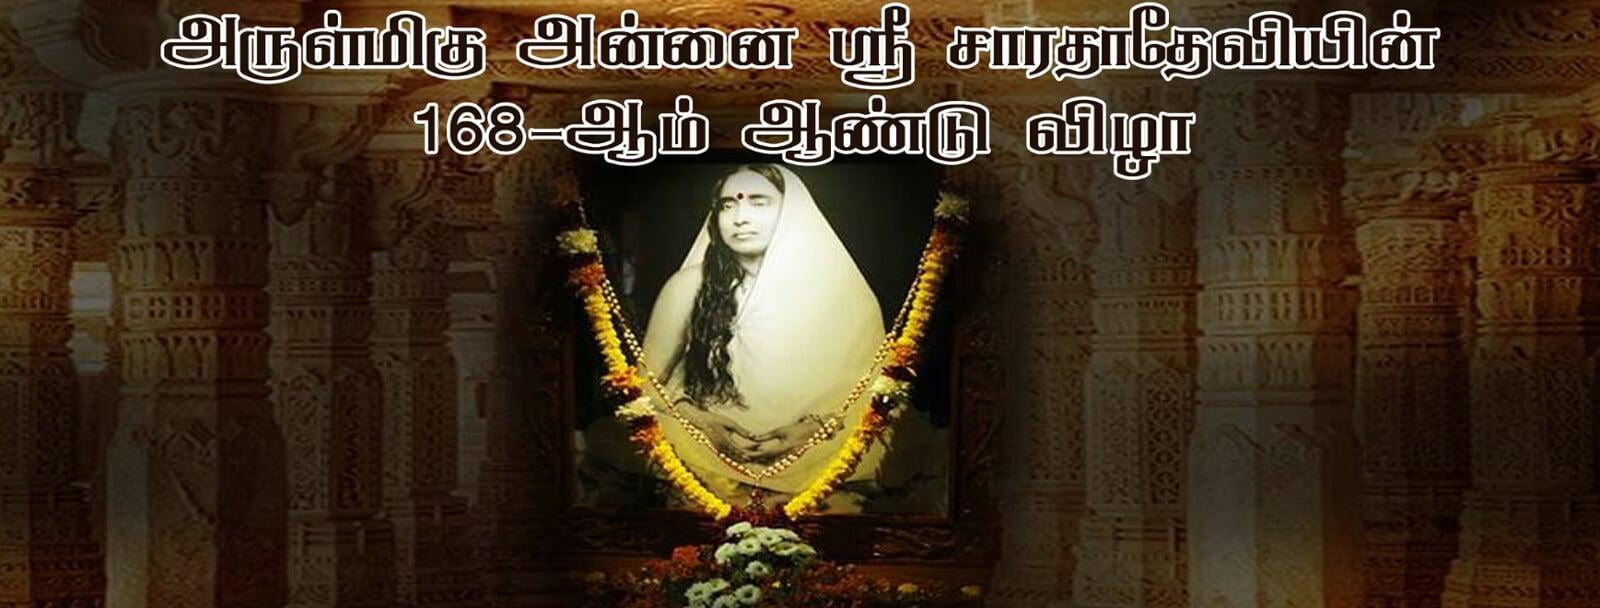 அருள்மிகு அன்னை ஸ்ரீ சாரதா தேவியின் 168-வது ஜெயந்தி விழா 2021 - Sri Sarada Devi’s 168th Jayanthi Celebration 2021